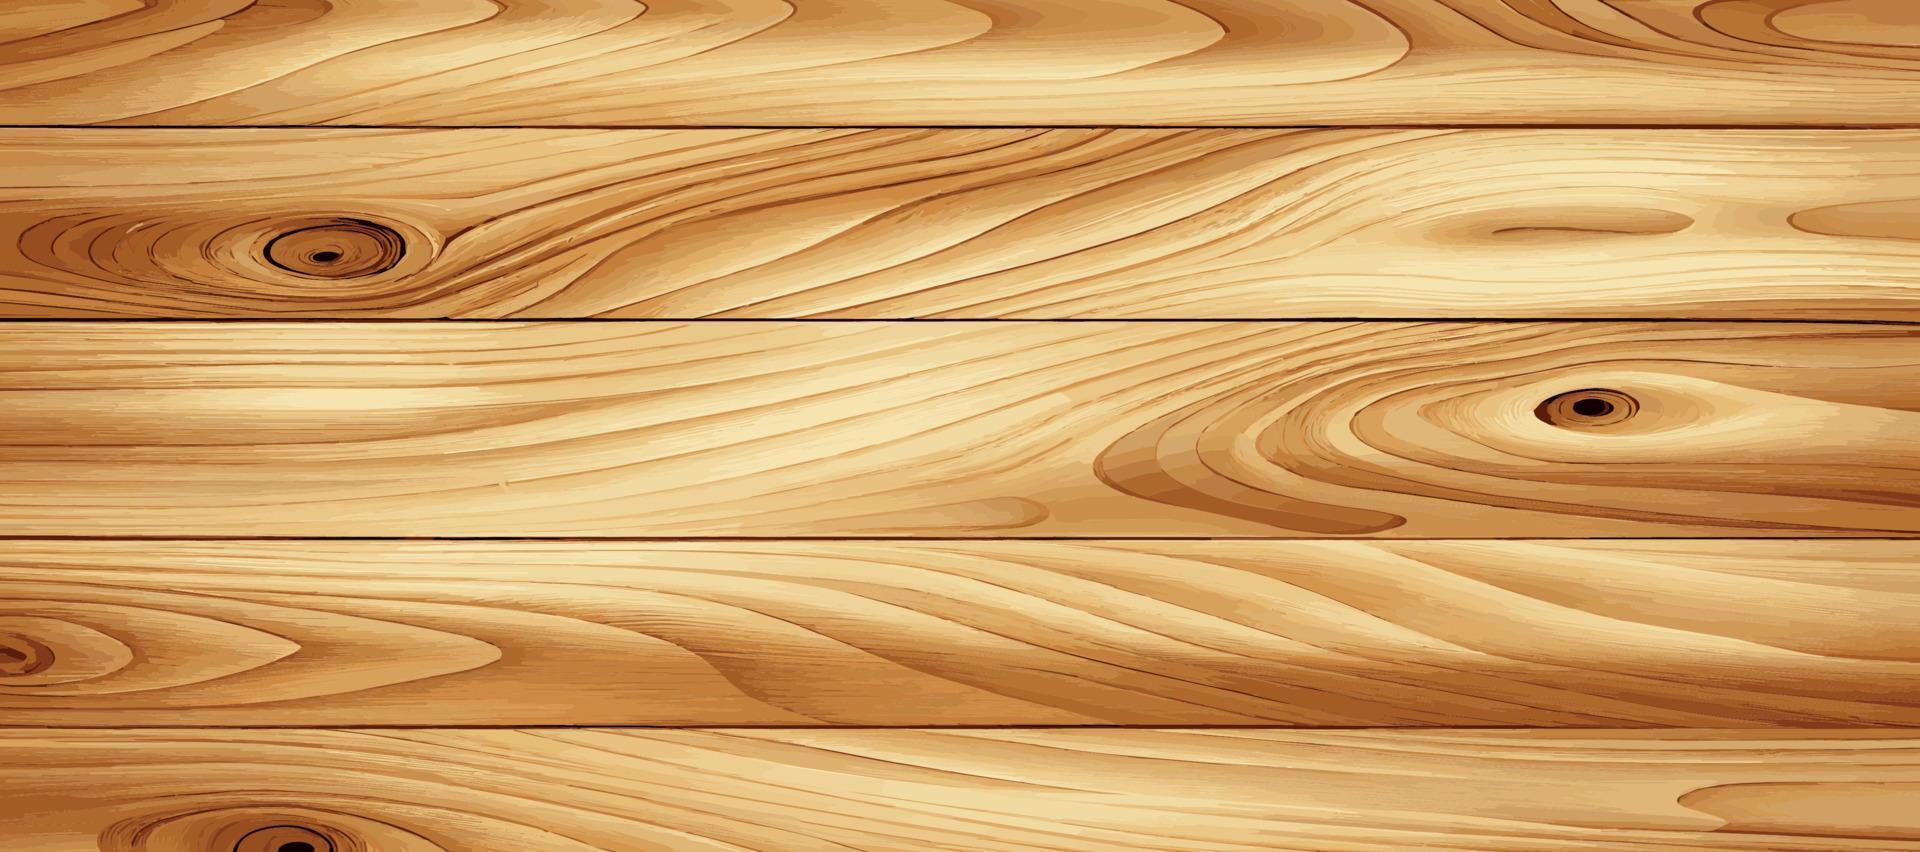 texture panoramique de bois clair avec noeuds - vecteur